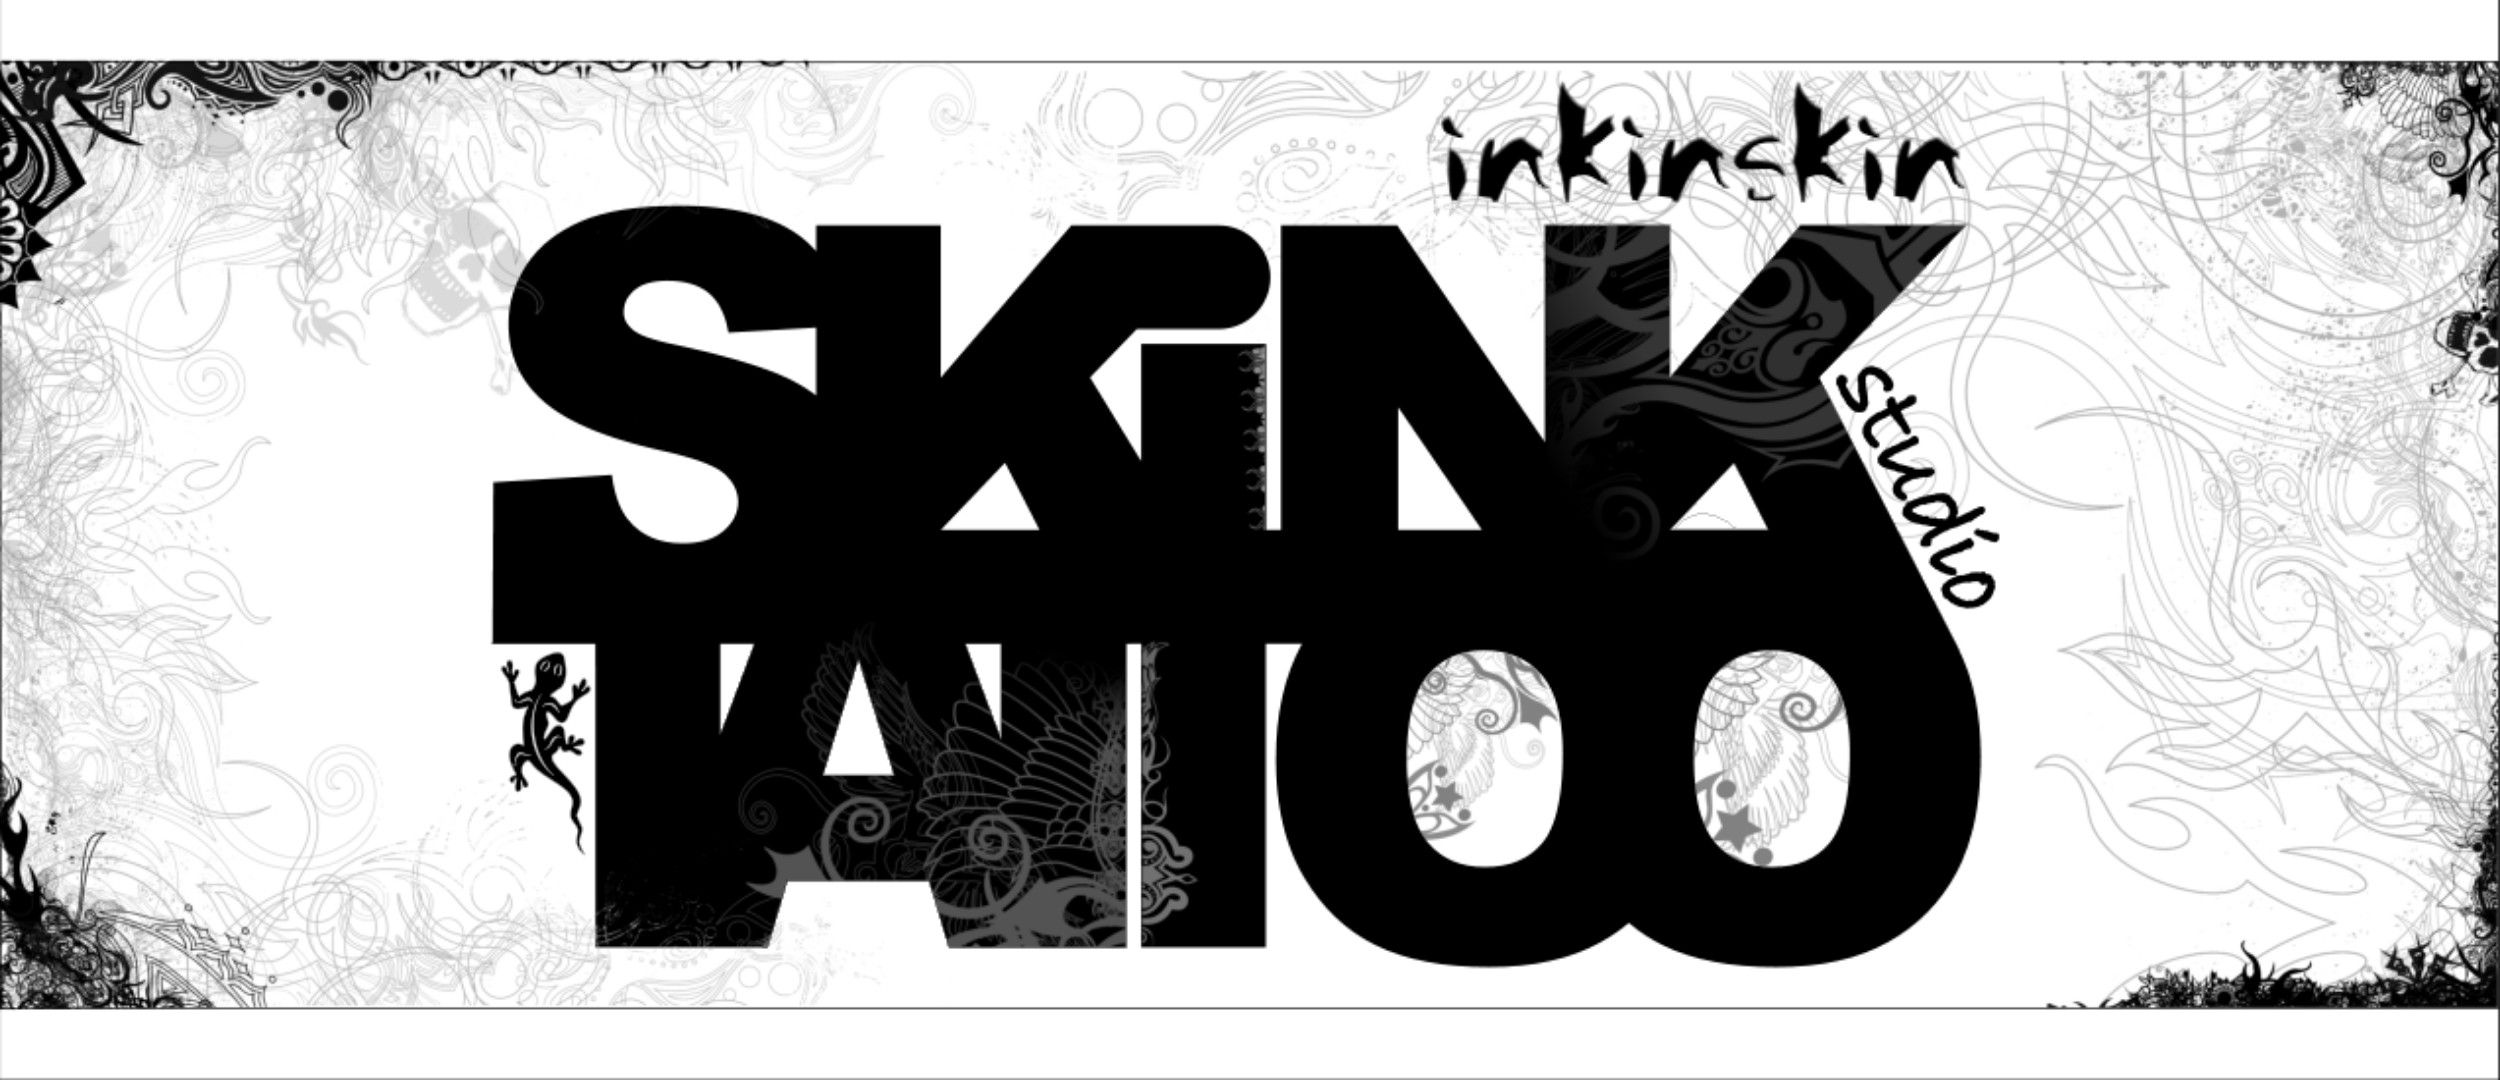 Skink Tattoo Studio in Faridabad Sector 15Delhi  Best Ear Piercing  Services in Delhi  Justdial